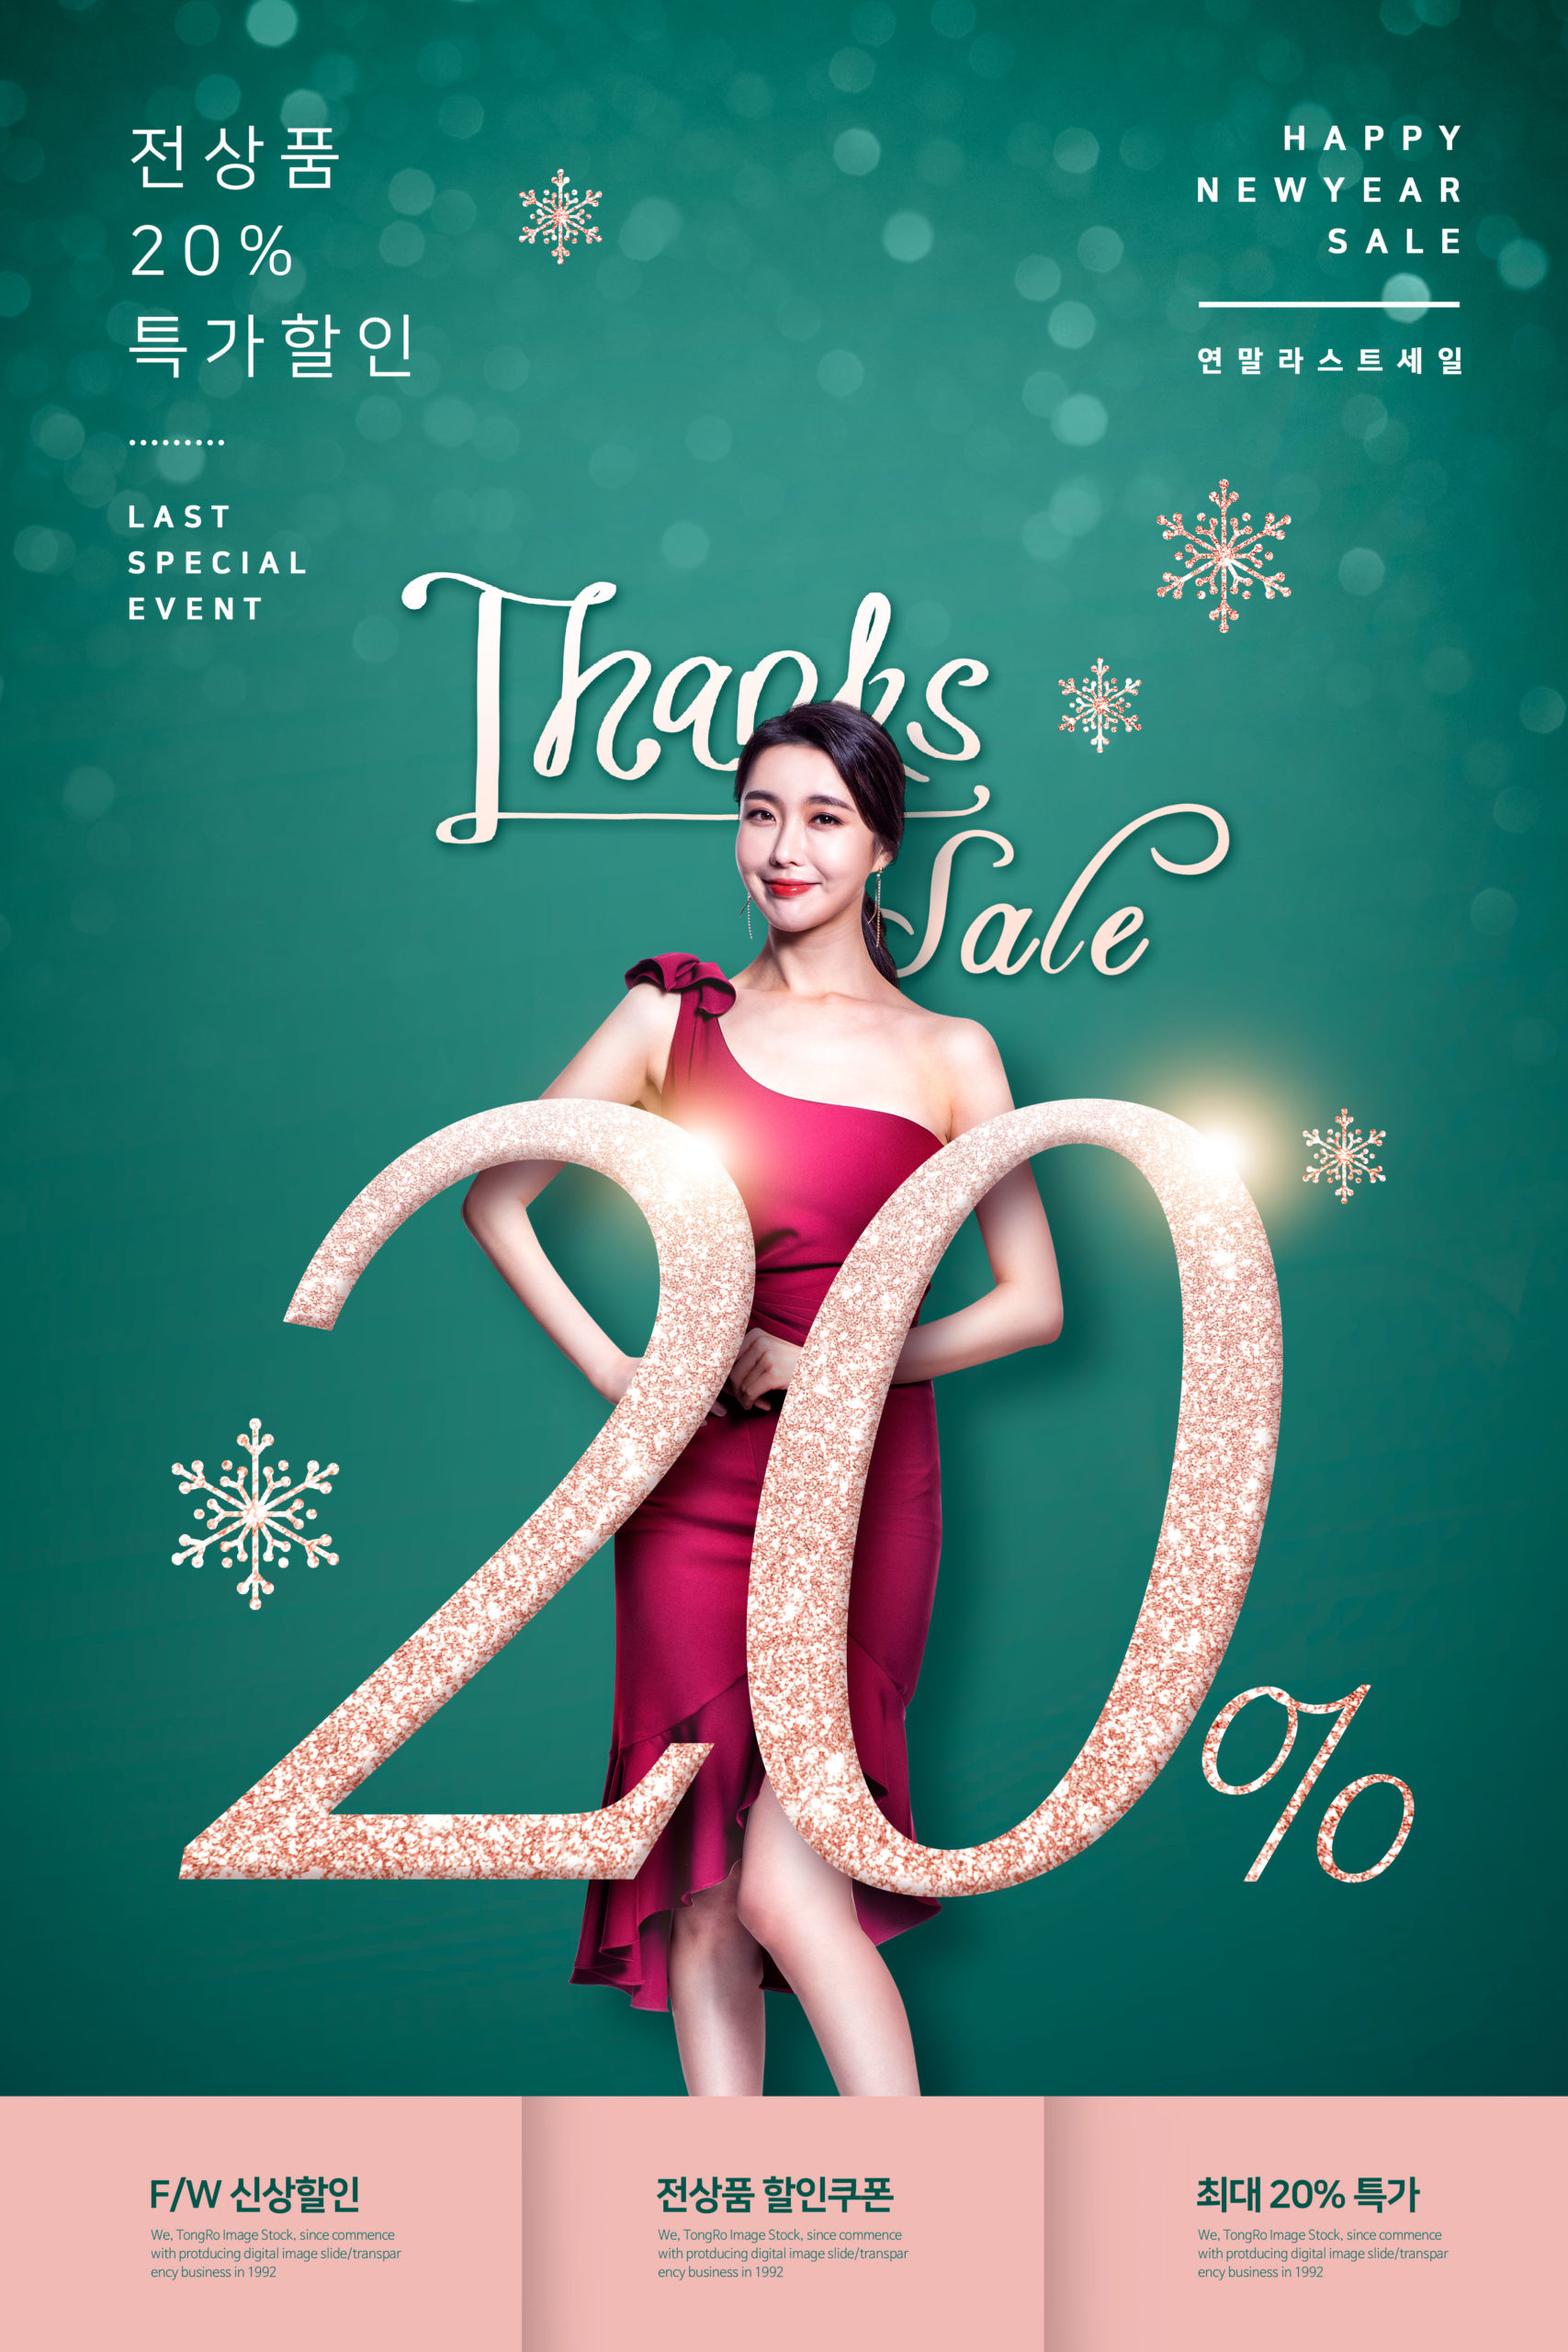 新年特价促销购物活动广告海报PSD素材蚂蚁素材精选模板插图